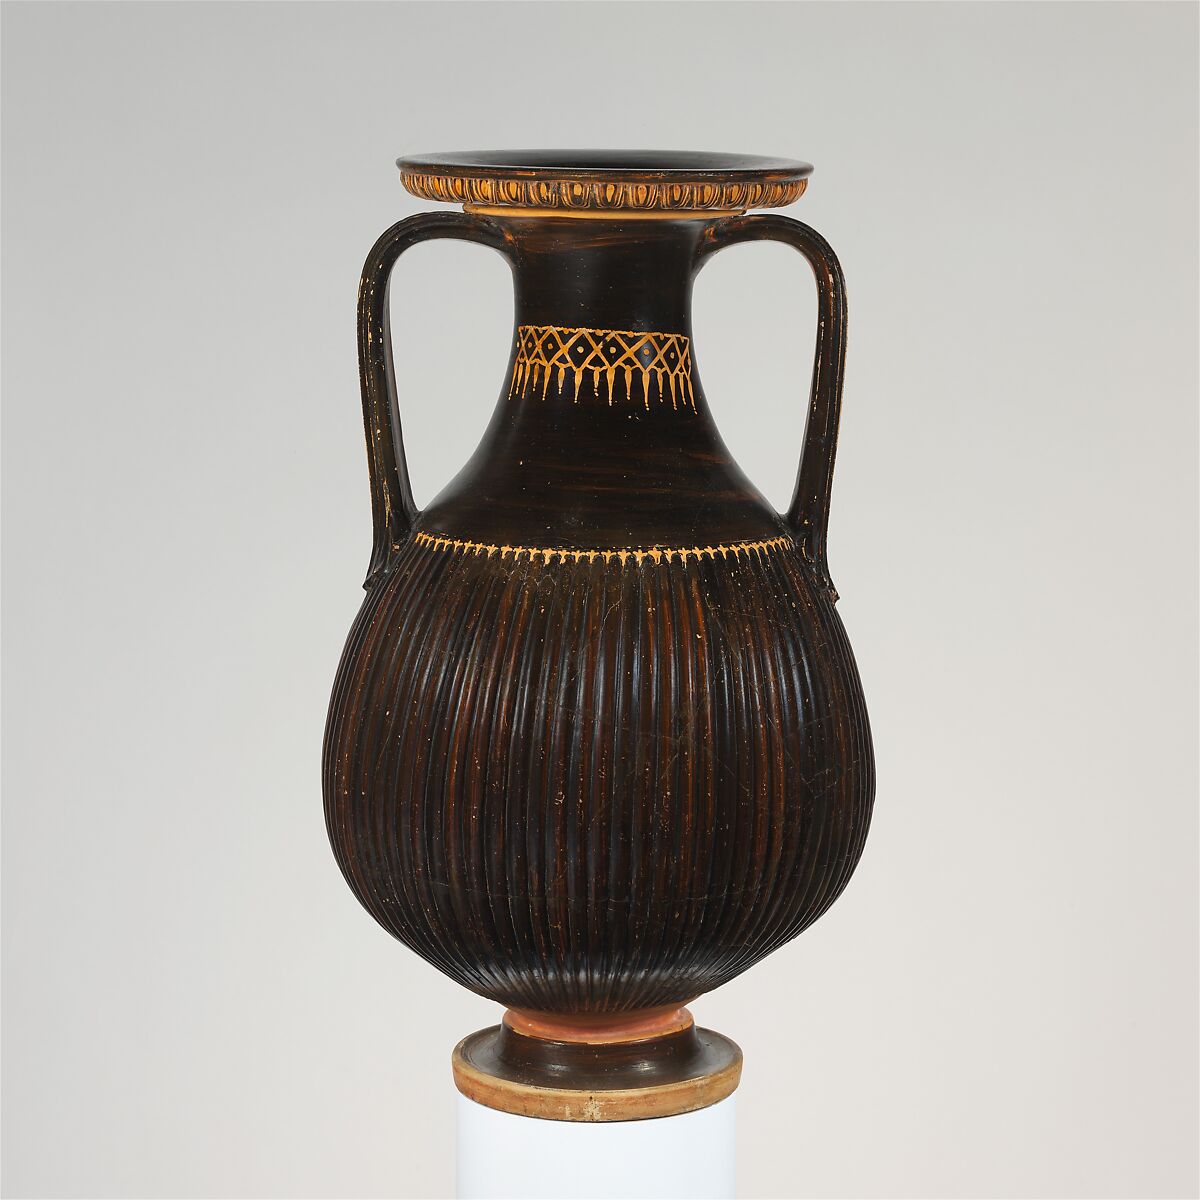 Terracotta pelike (jar), Terracotta, Greek, South Italian, Apulian 